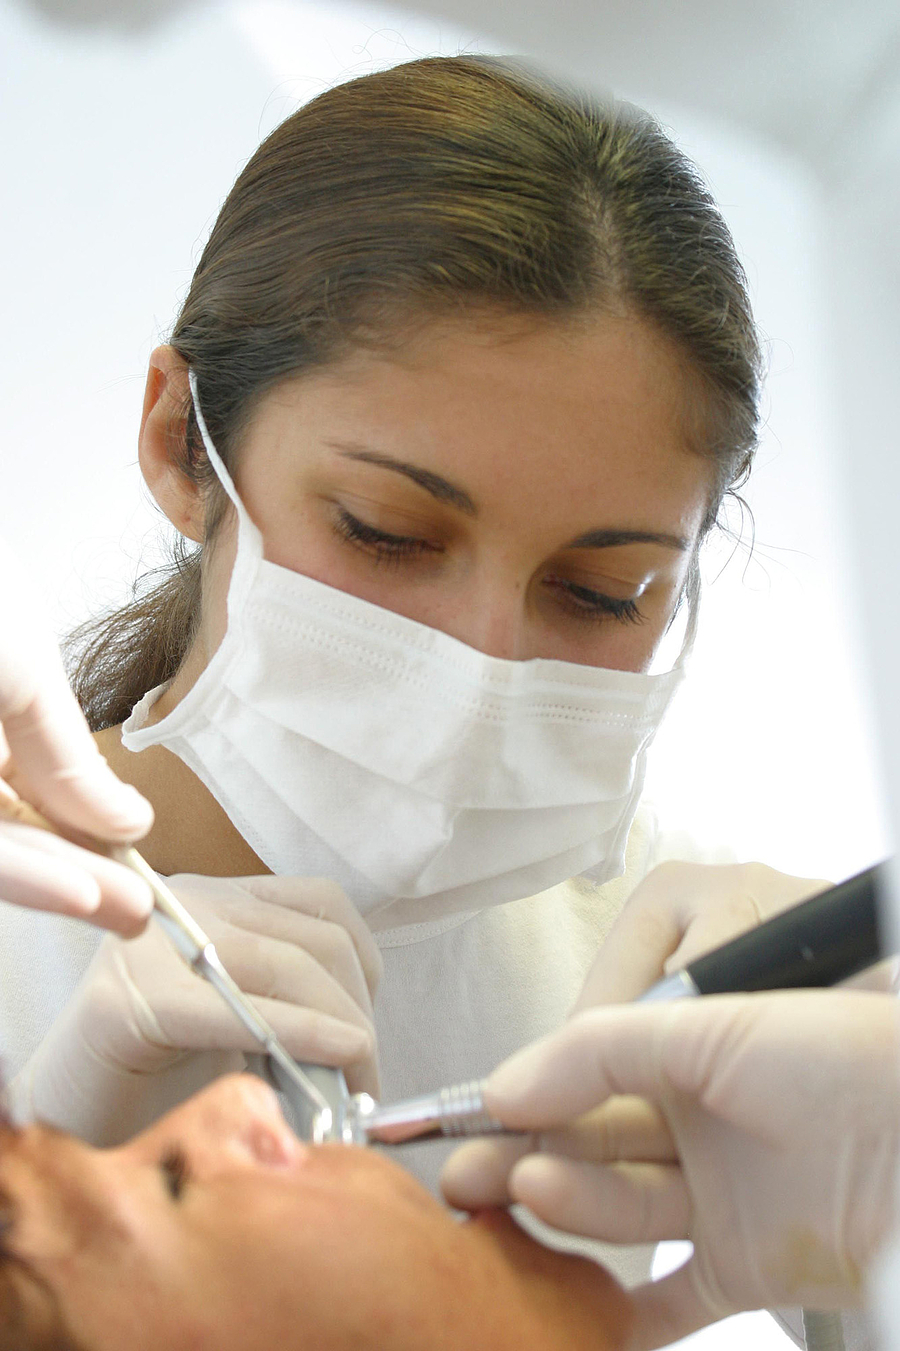 Zahnärzte und Zahntechniker sind Hygieneprofis